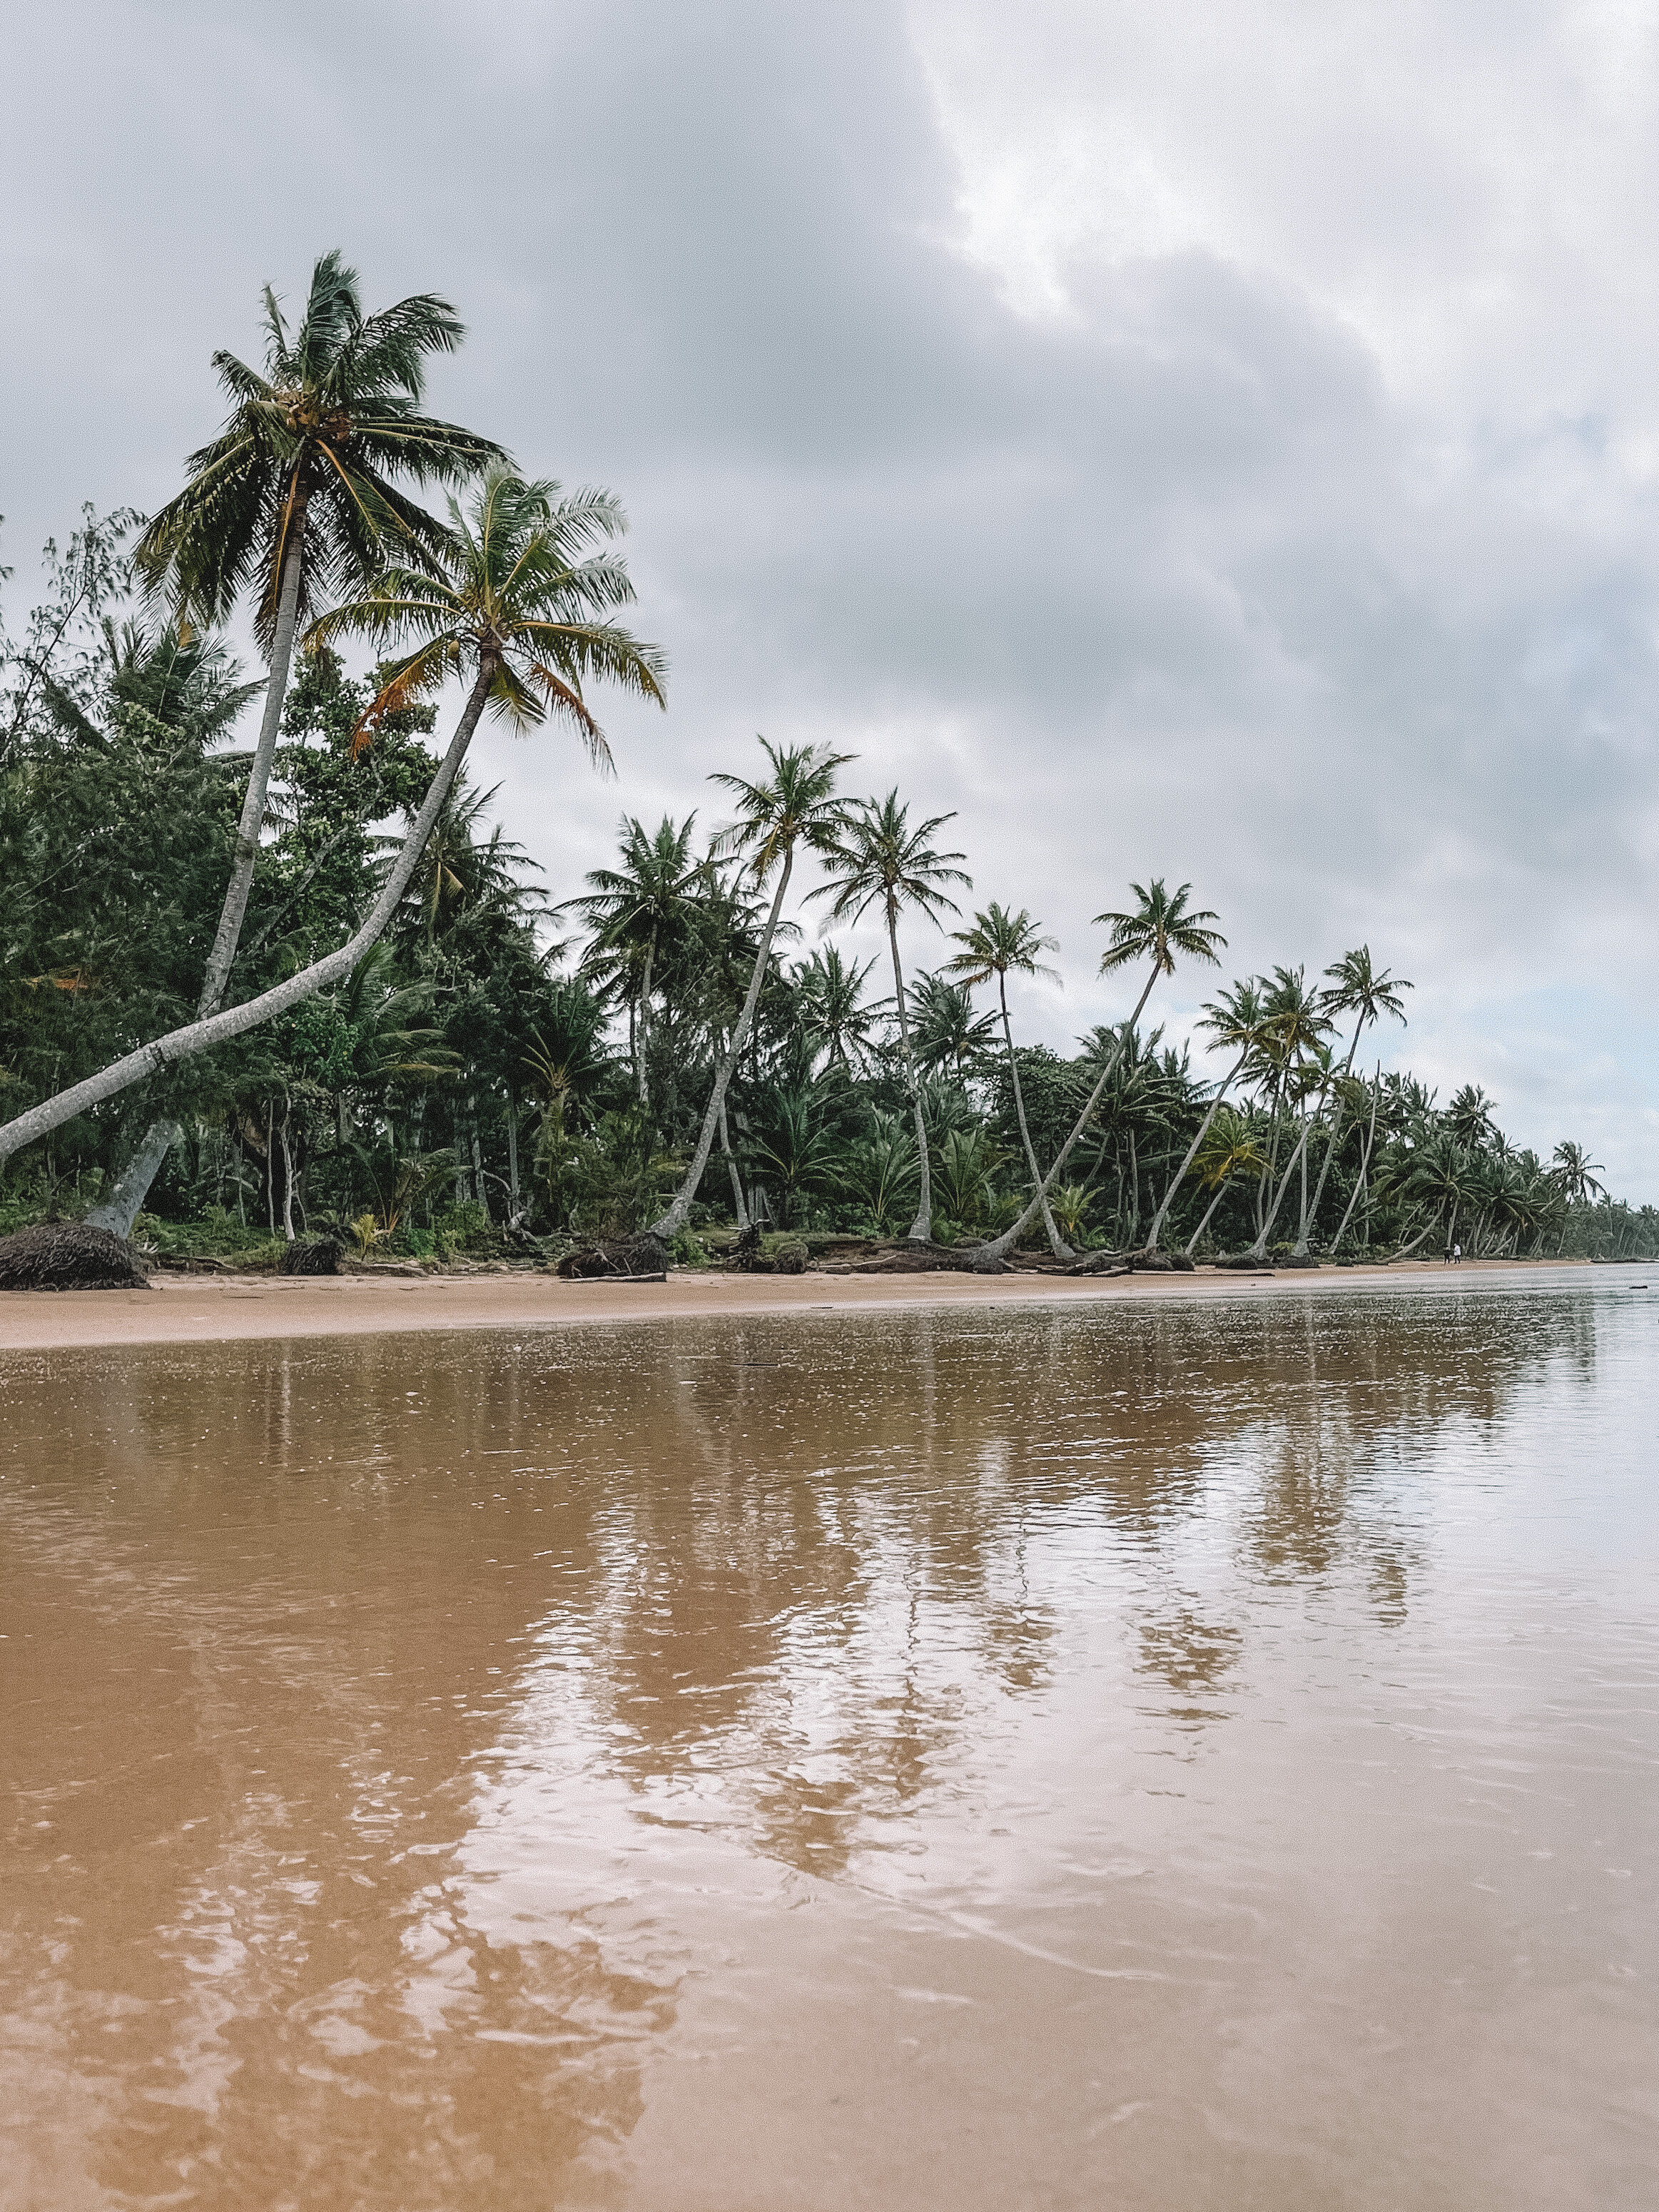 Réflection des palmiers sur le sable mouillé - Mission Beach - Tropical North Queensland (QLD) - Australie